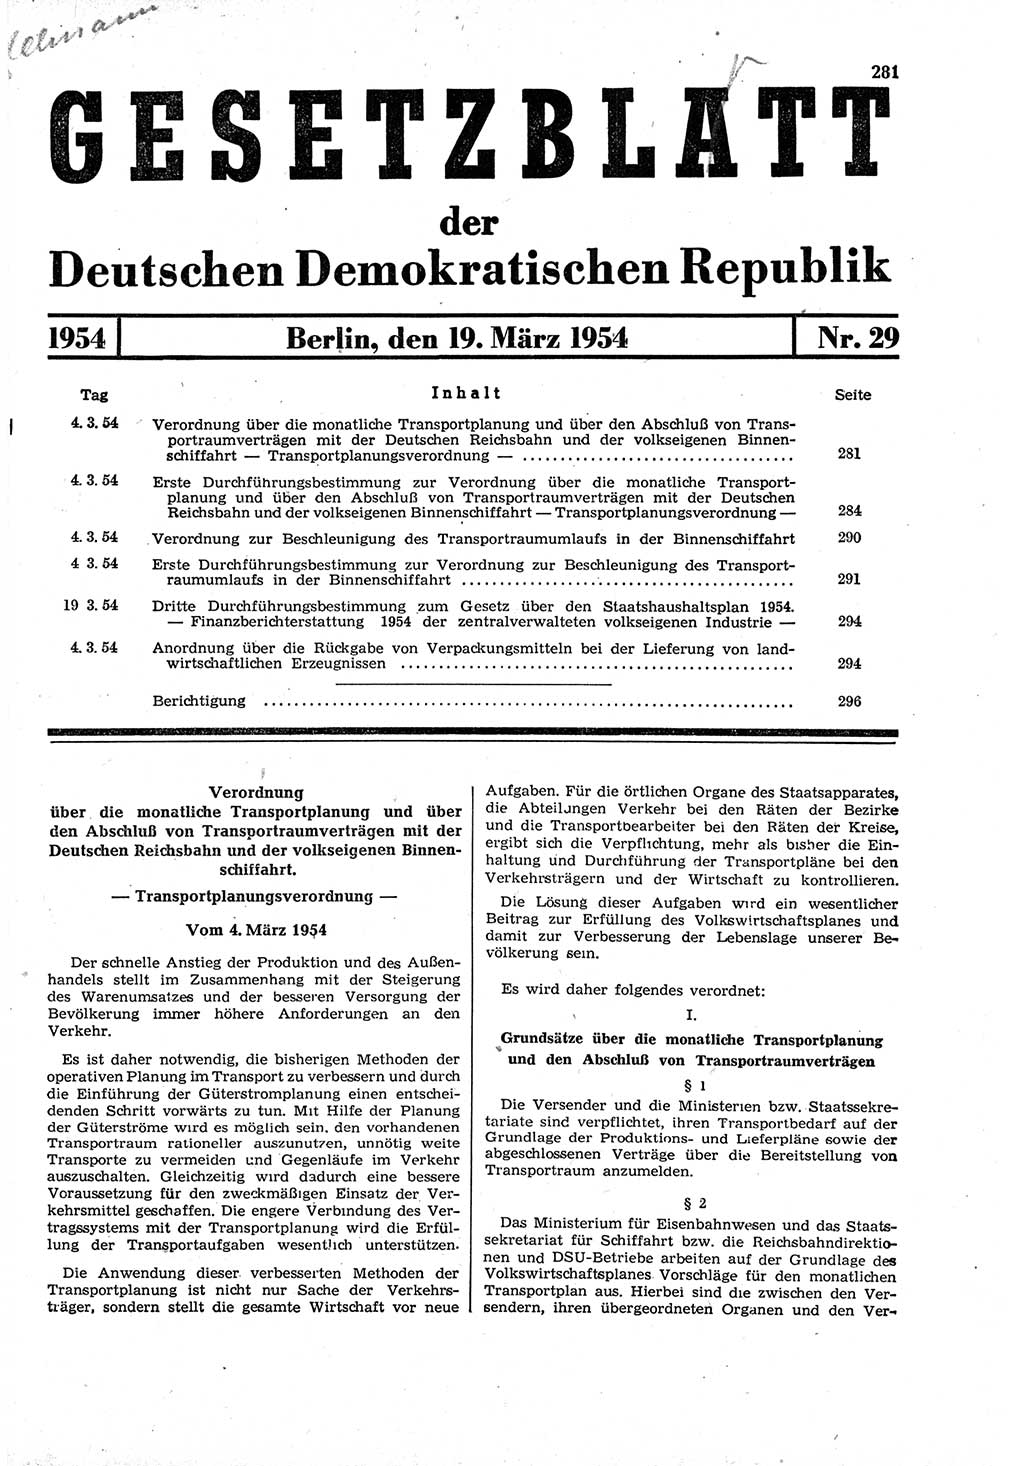 Gesetzblatt (GBl.) der Deutschen Demokratischen Republik (DDR) 1954, Seite 281 (GBl. DDR 1954, S. 281)